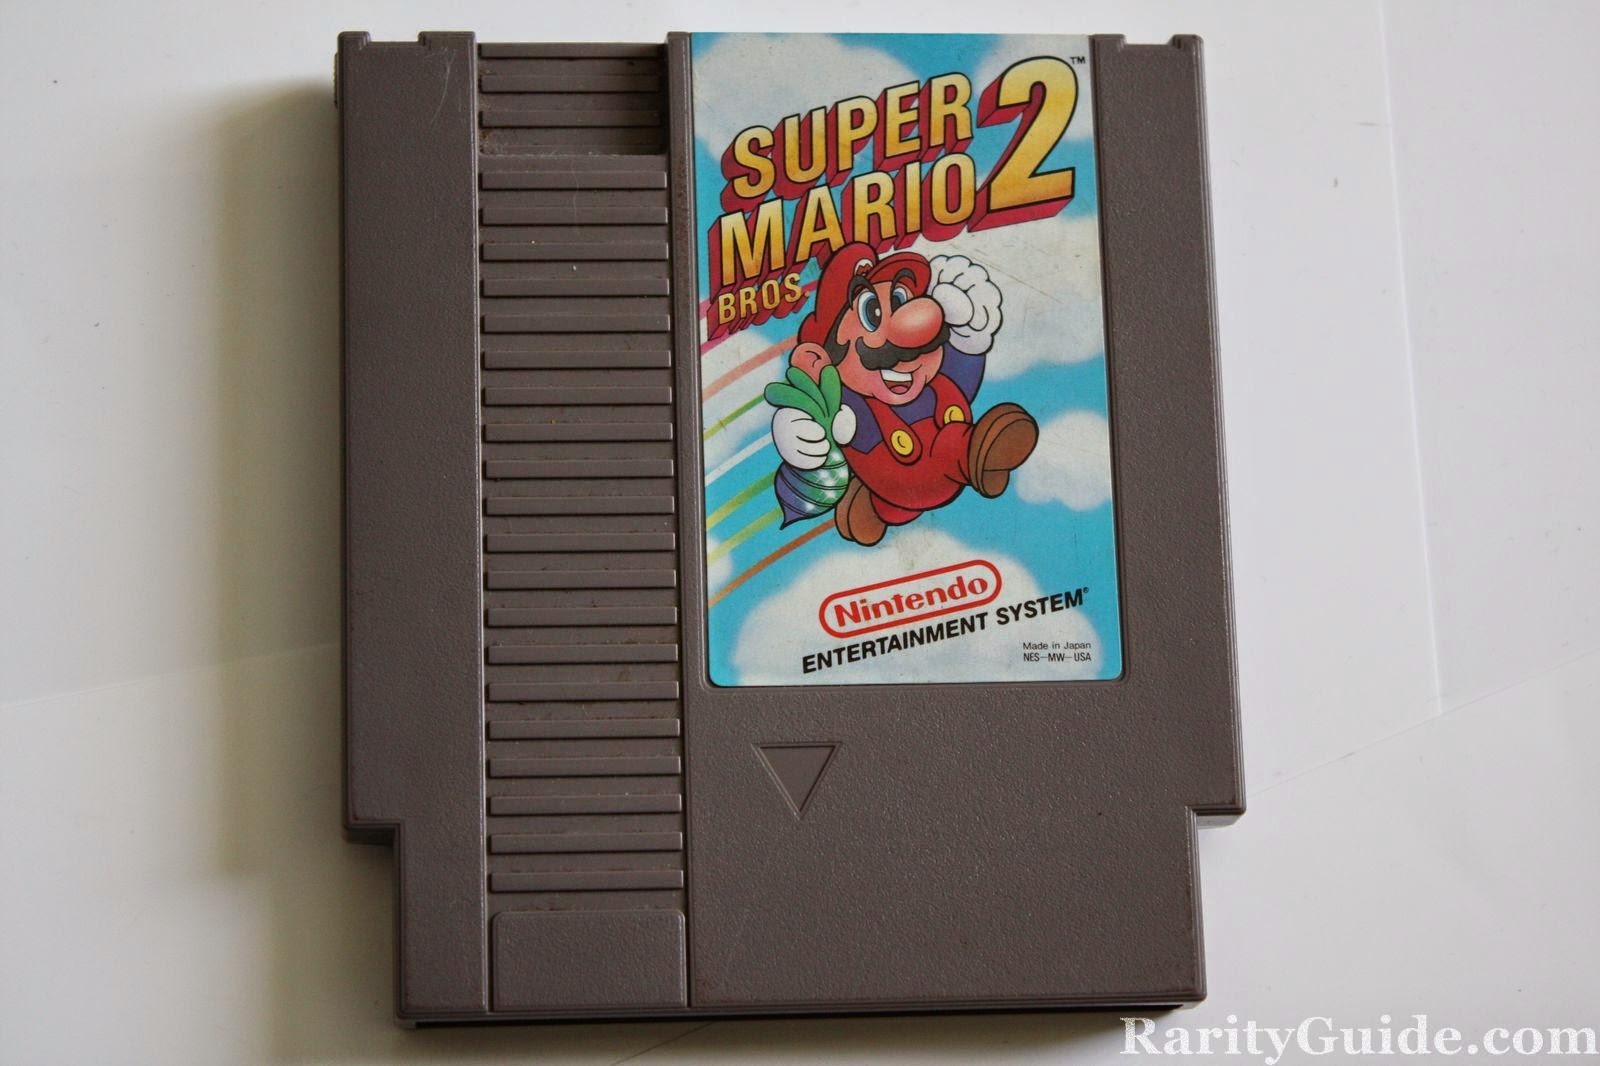 Mario bros snes. Картриджи Nintendo NES. Super Mario Bros 3 NES картридж. Super Mario Bros 1985 картридж. Супер Марио 2 NES.